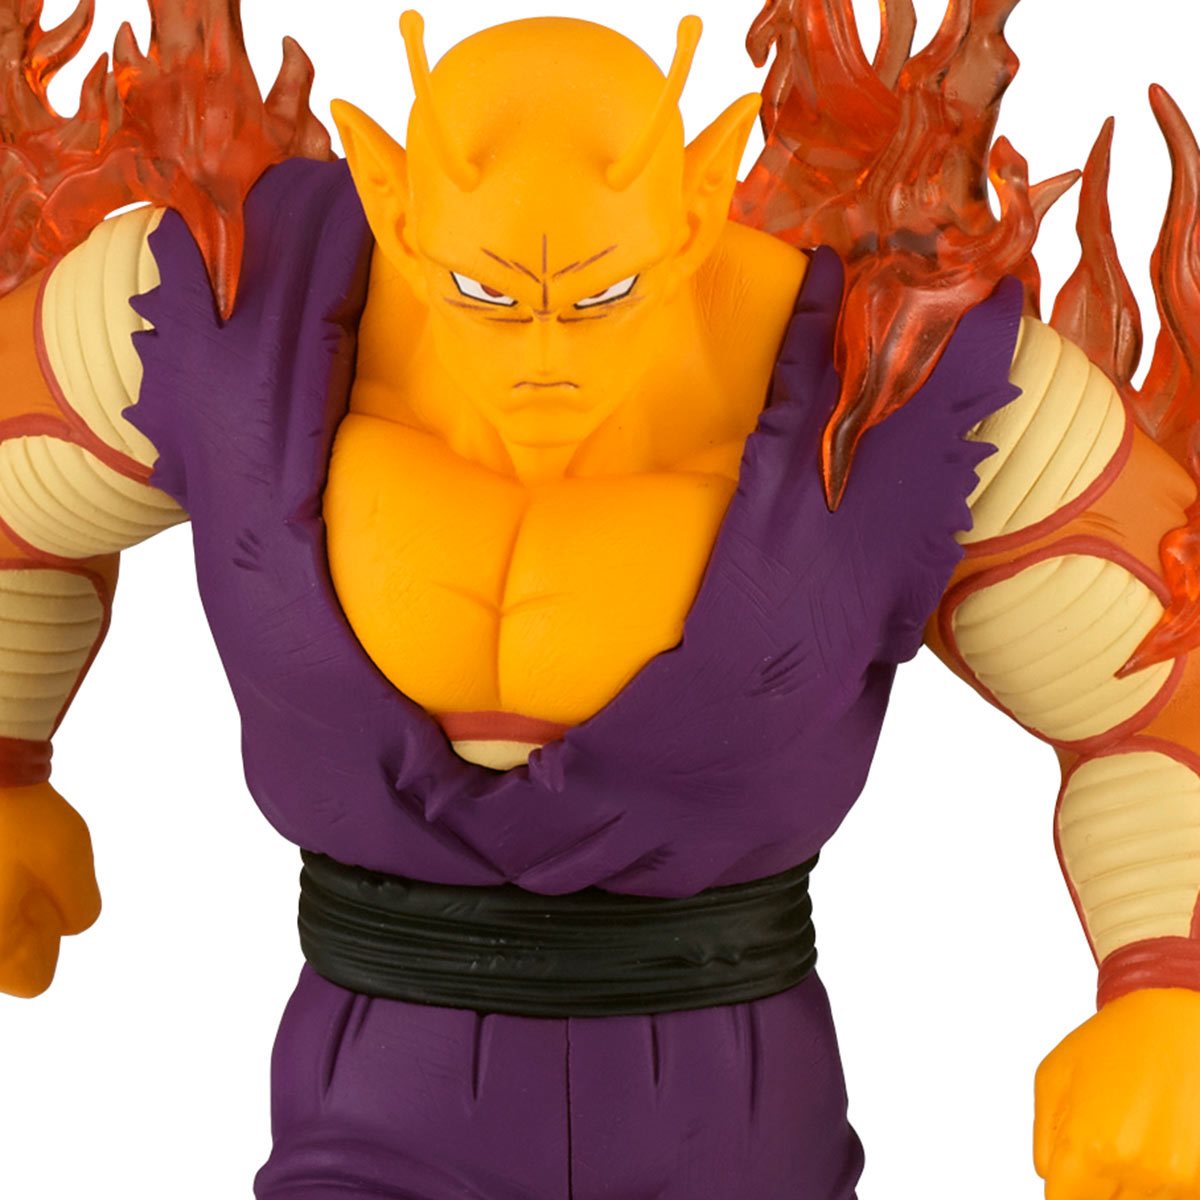 Dragon Ball Super: Super Hero Orange Piccolo Statue – Zwetow